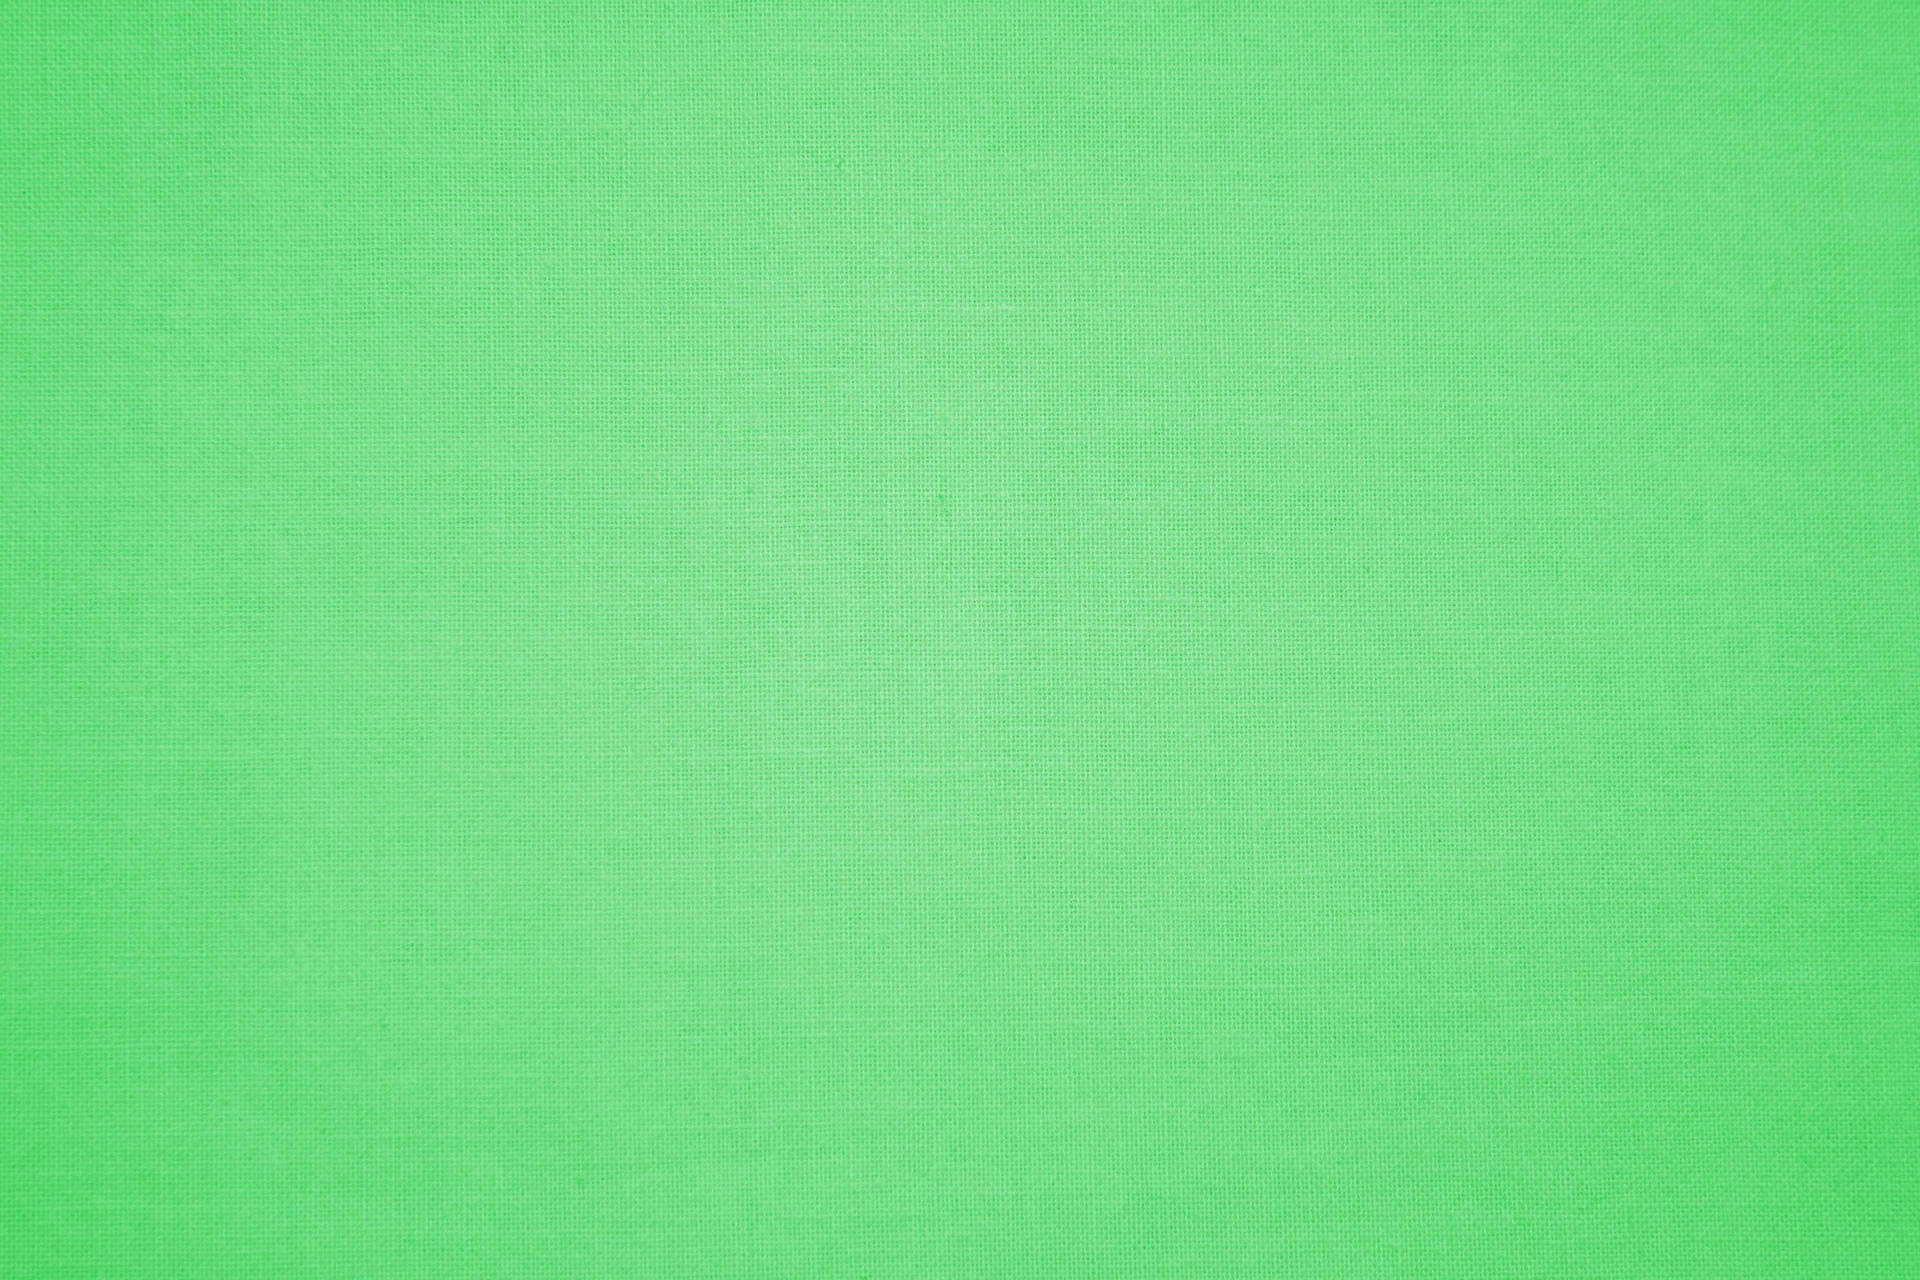 Super Light Green Cloth Texture Wallpaper